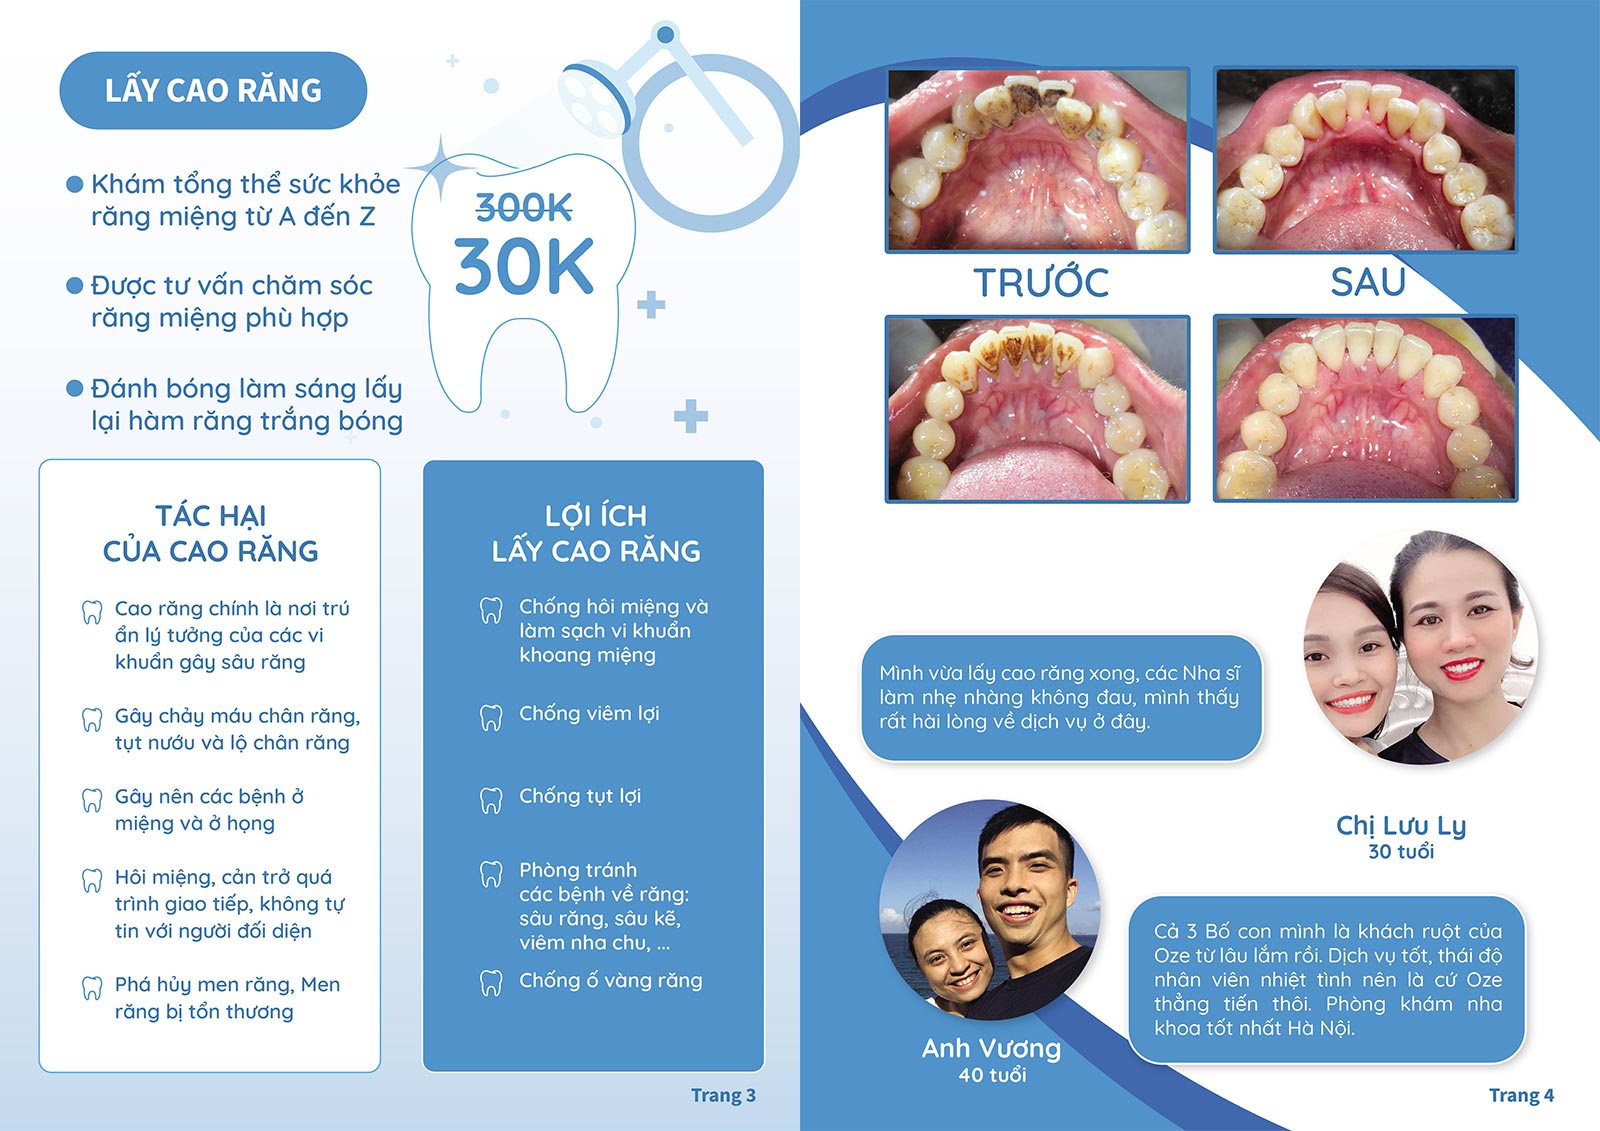 Lấy cao răng CỰC SỐC giá 30.000 đồng của nha khoa OZE